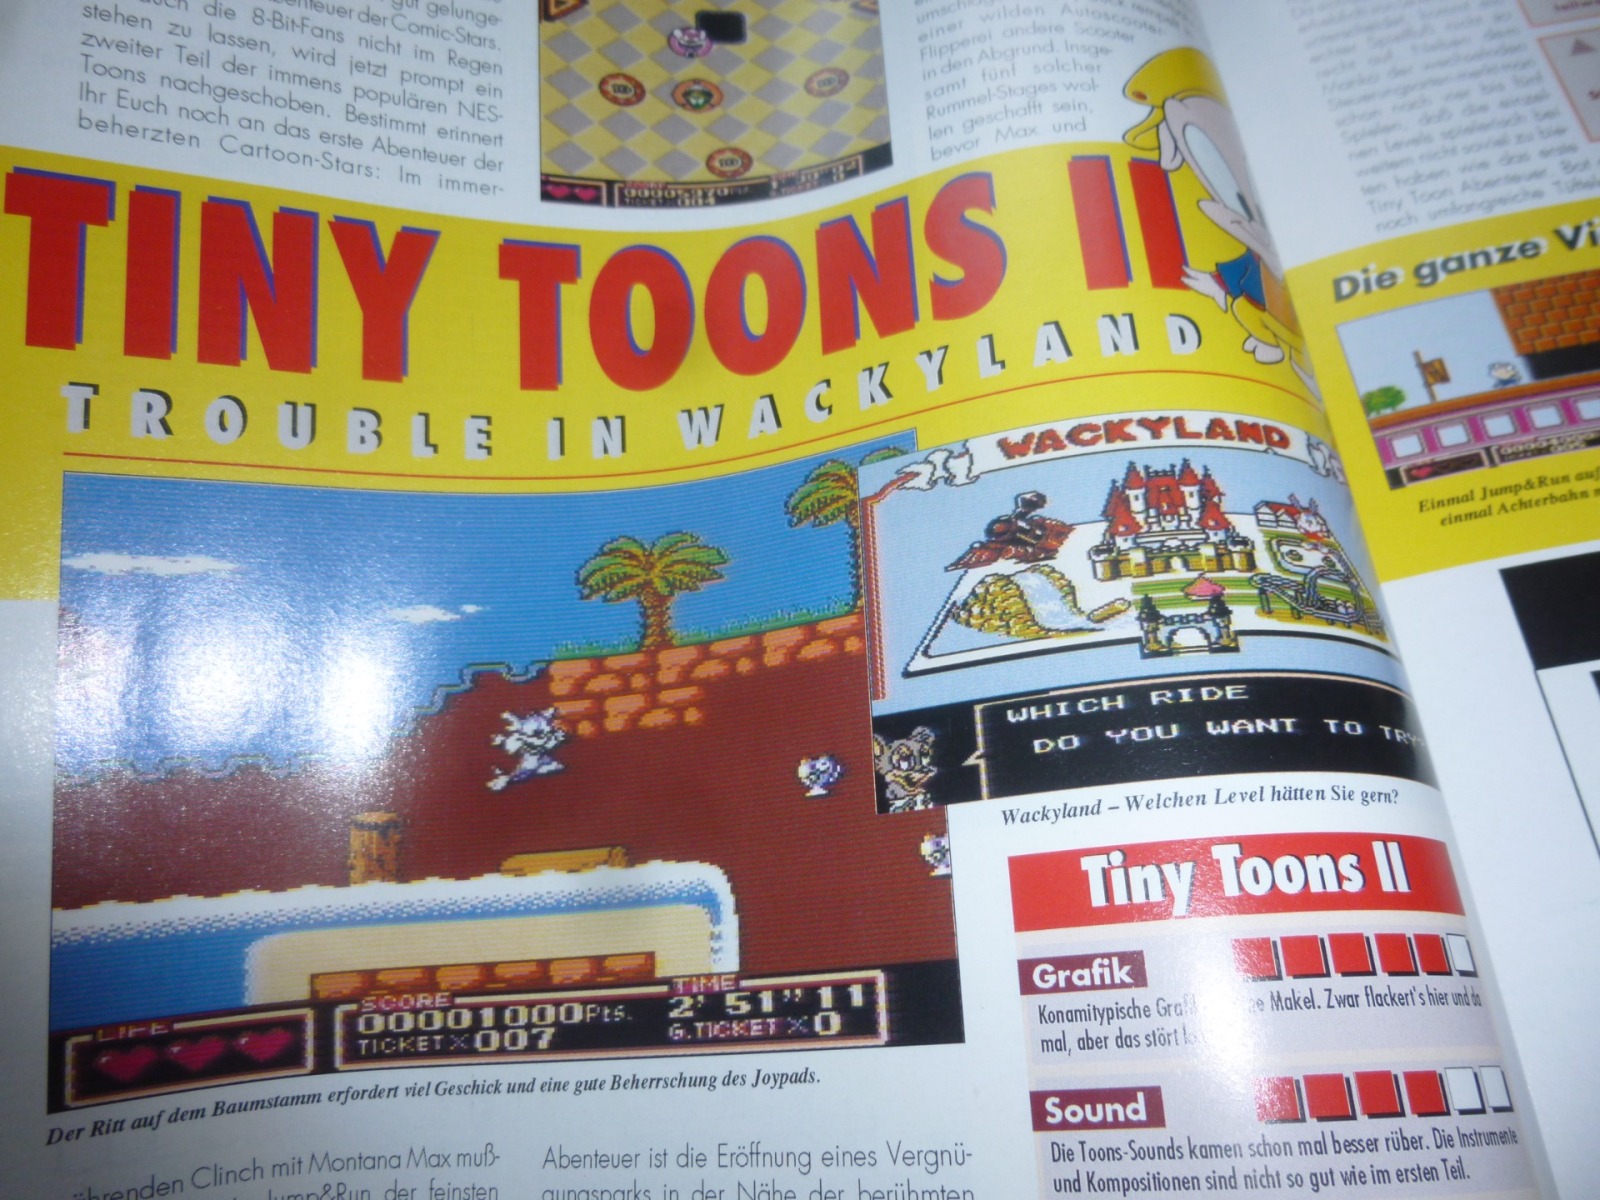 TOTAL Das unabhängige Magazin - 100 Nintendo - Ausgabe 9/93 1993 15